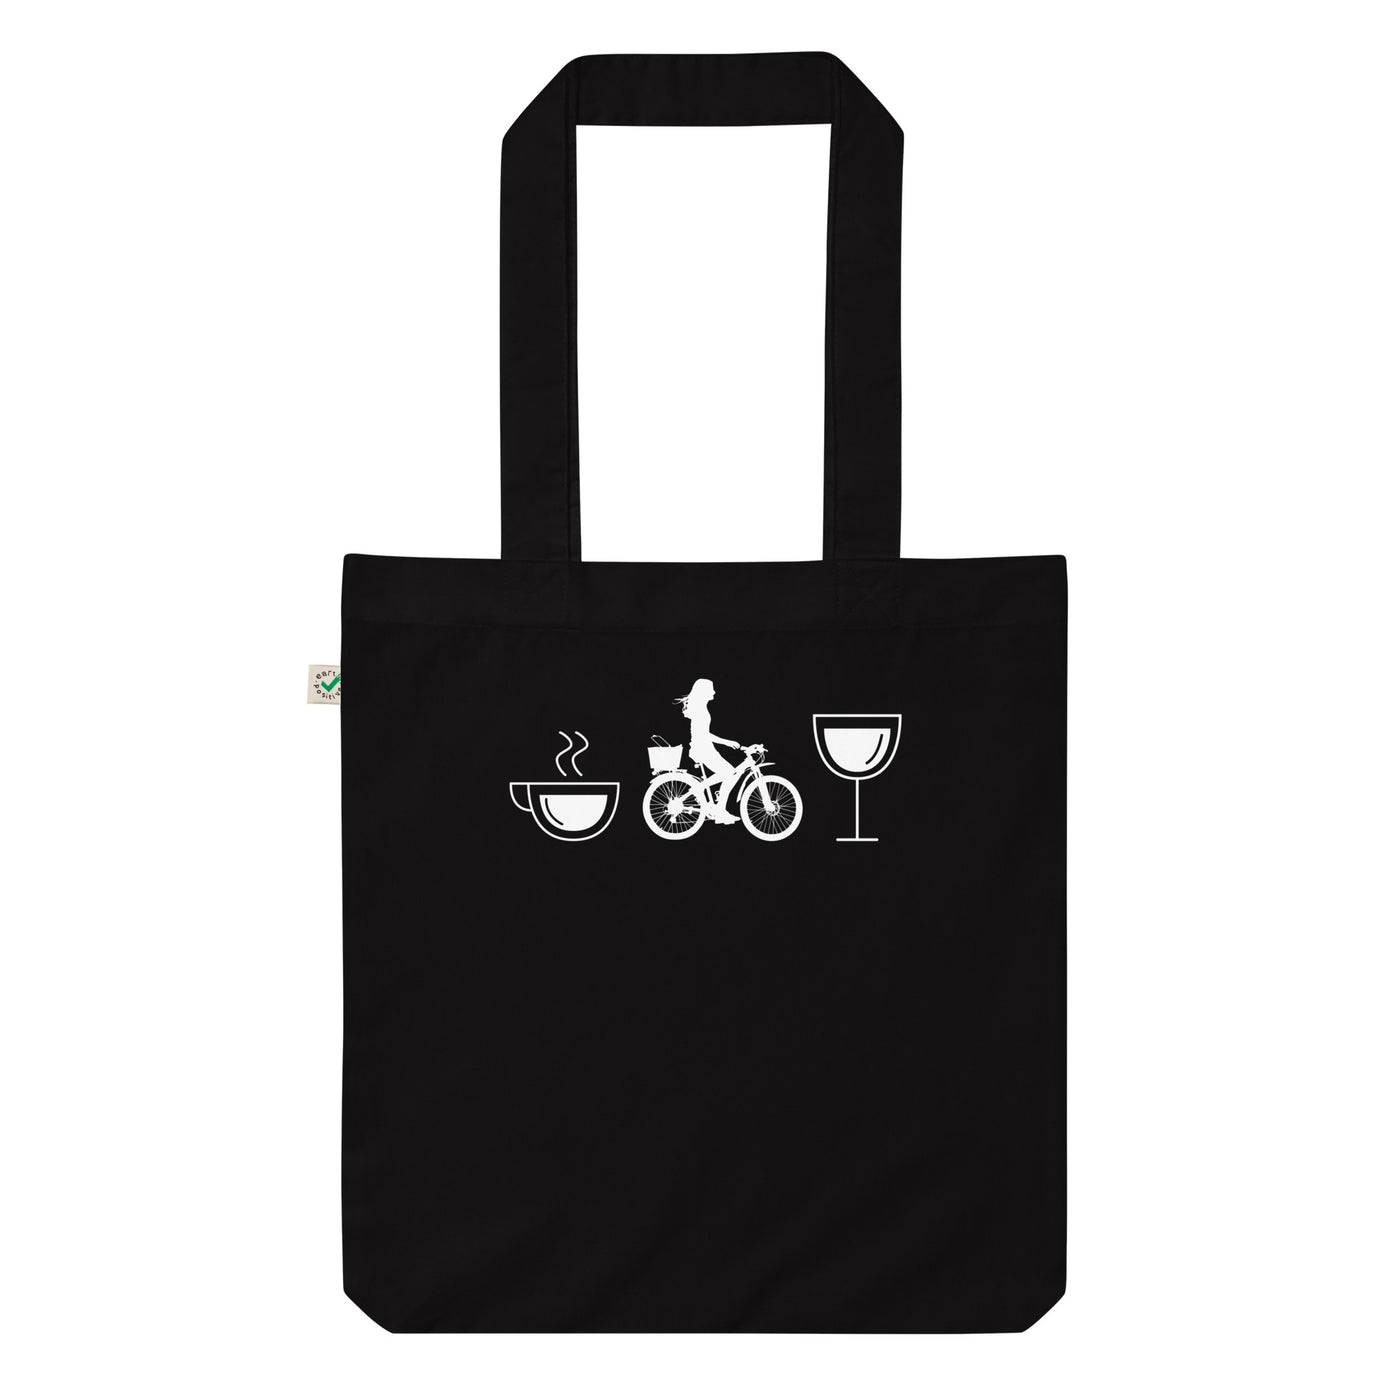 Kaffee, Wein Und Radfahren - Organic Einkaufstasche fahrrad Black